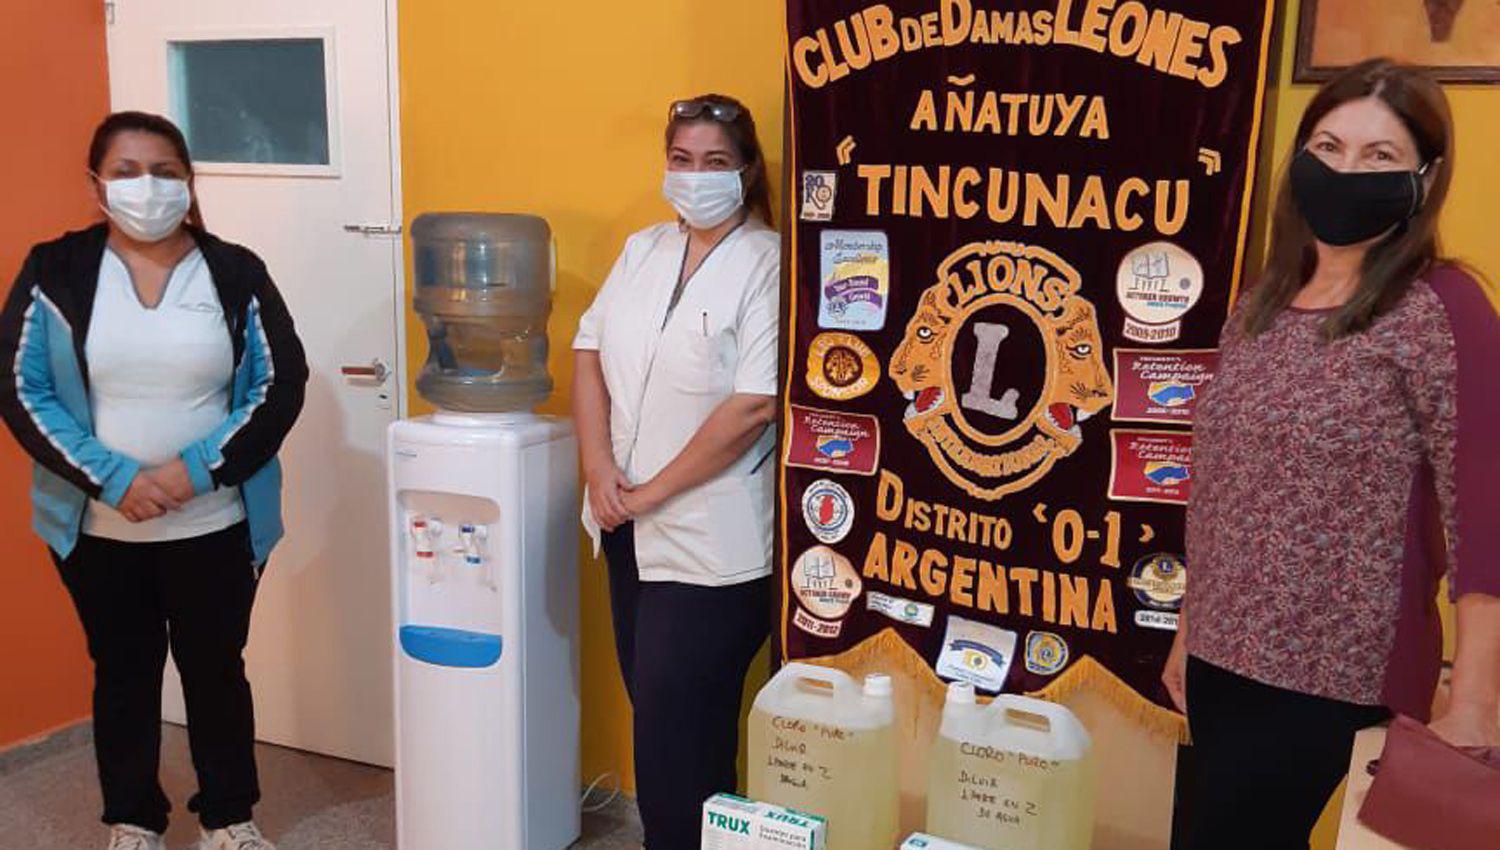 El Hospital Zonal de Antildeatuya recibioacute donaciones varias del Club de Damas Leones